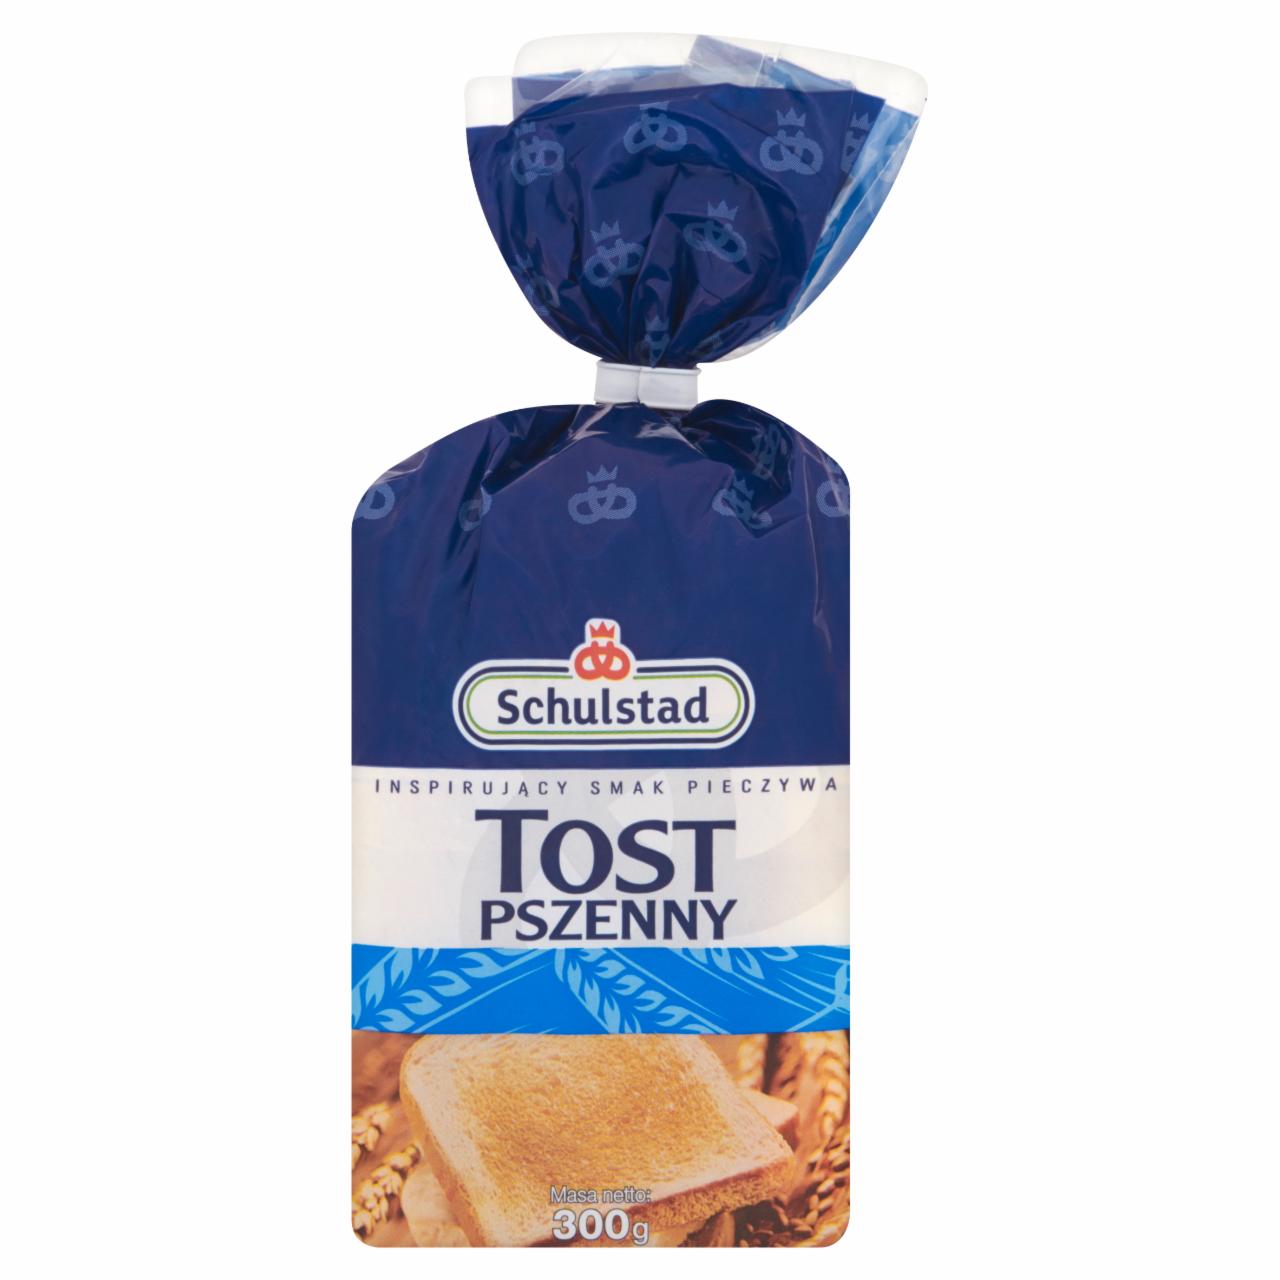 Zdjęcia - Schulstad Tost pszenny Chleb tostowy 300 g